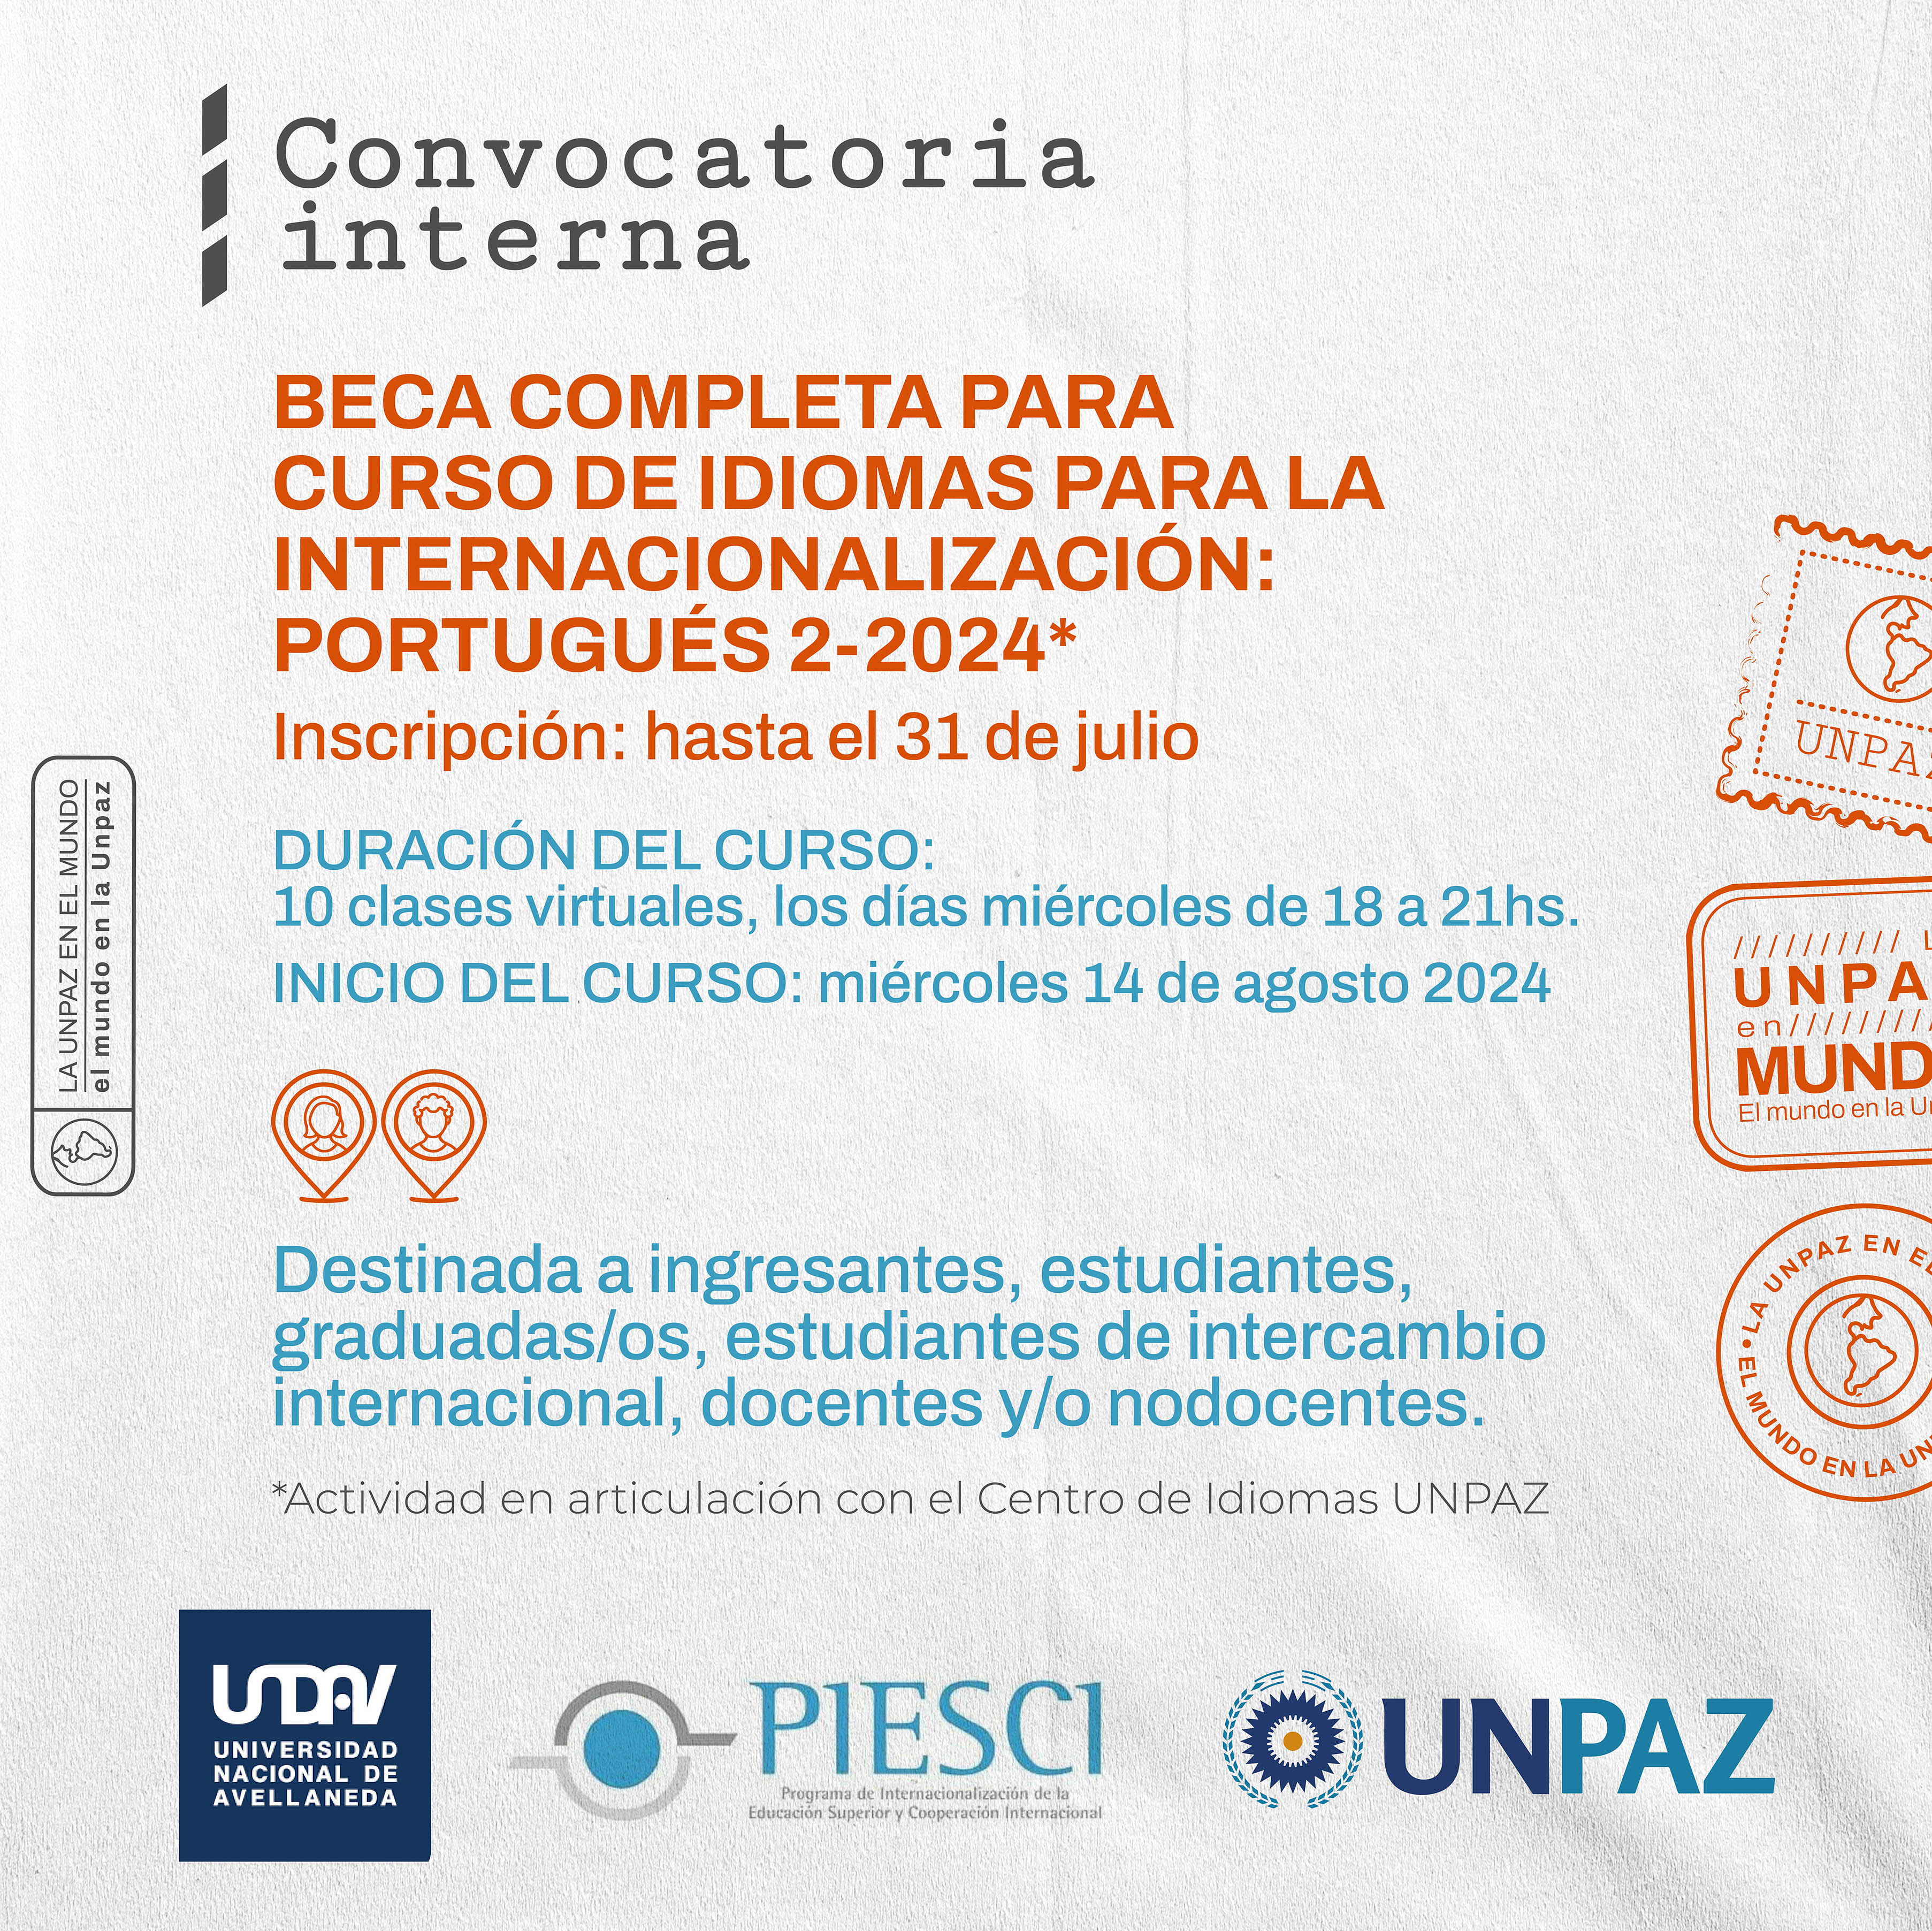 CONVOCATORIA INTERNA ABIERTA A BECA COMPLETA “CURSO DE IDIOMAS PARA LA INTERNACIONALIZACIÓN PORTUGUÉS 2-2024" - UNPAZ